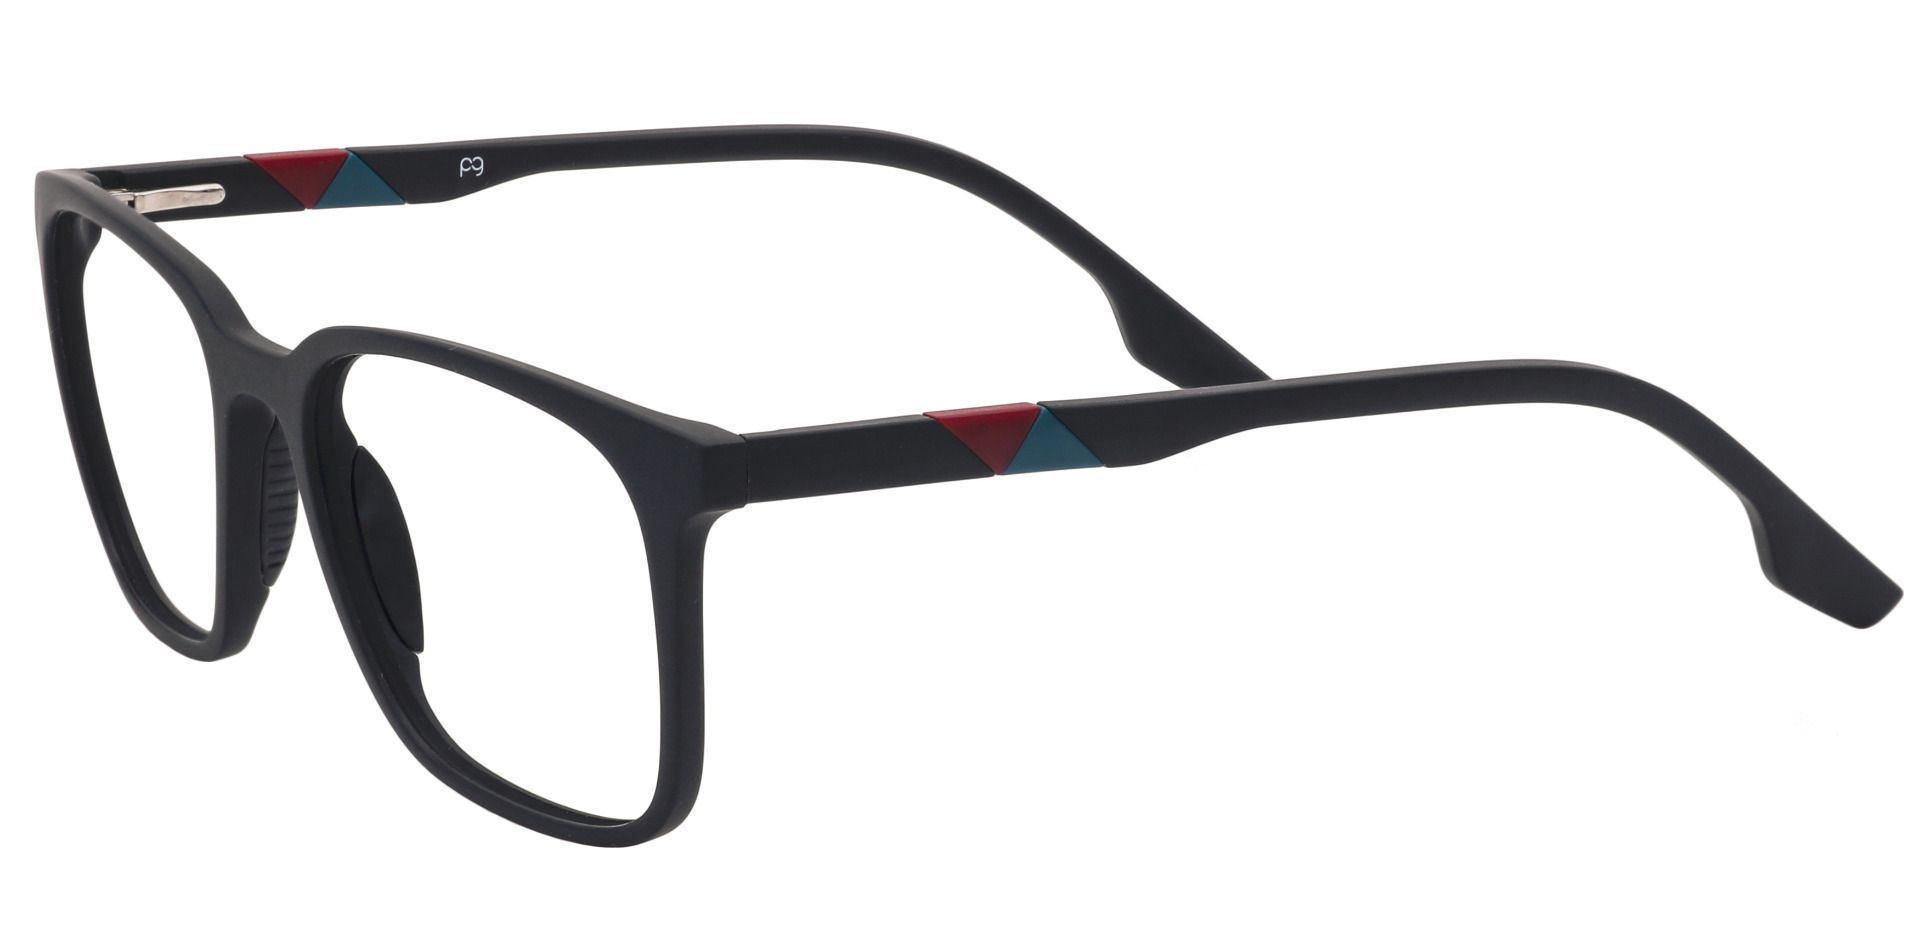 Elia Square Non-Rx Glasses - Black